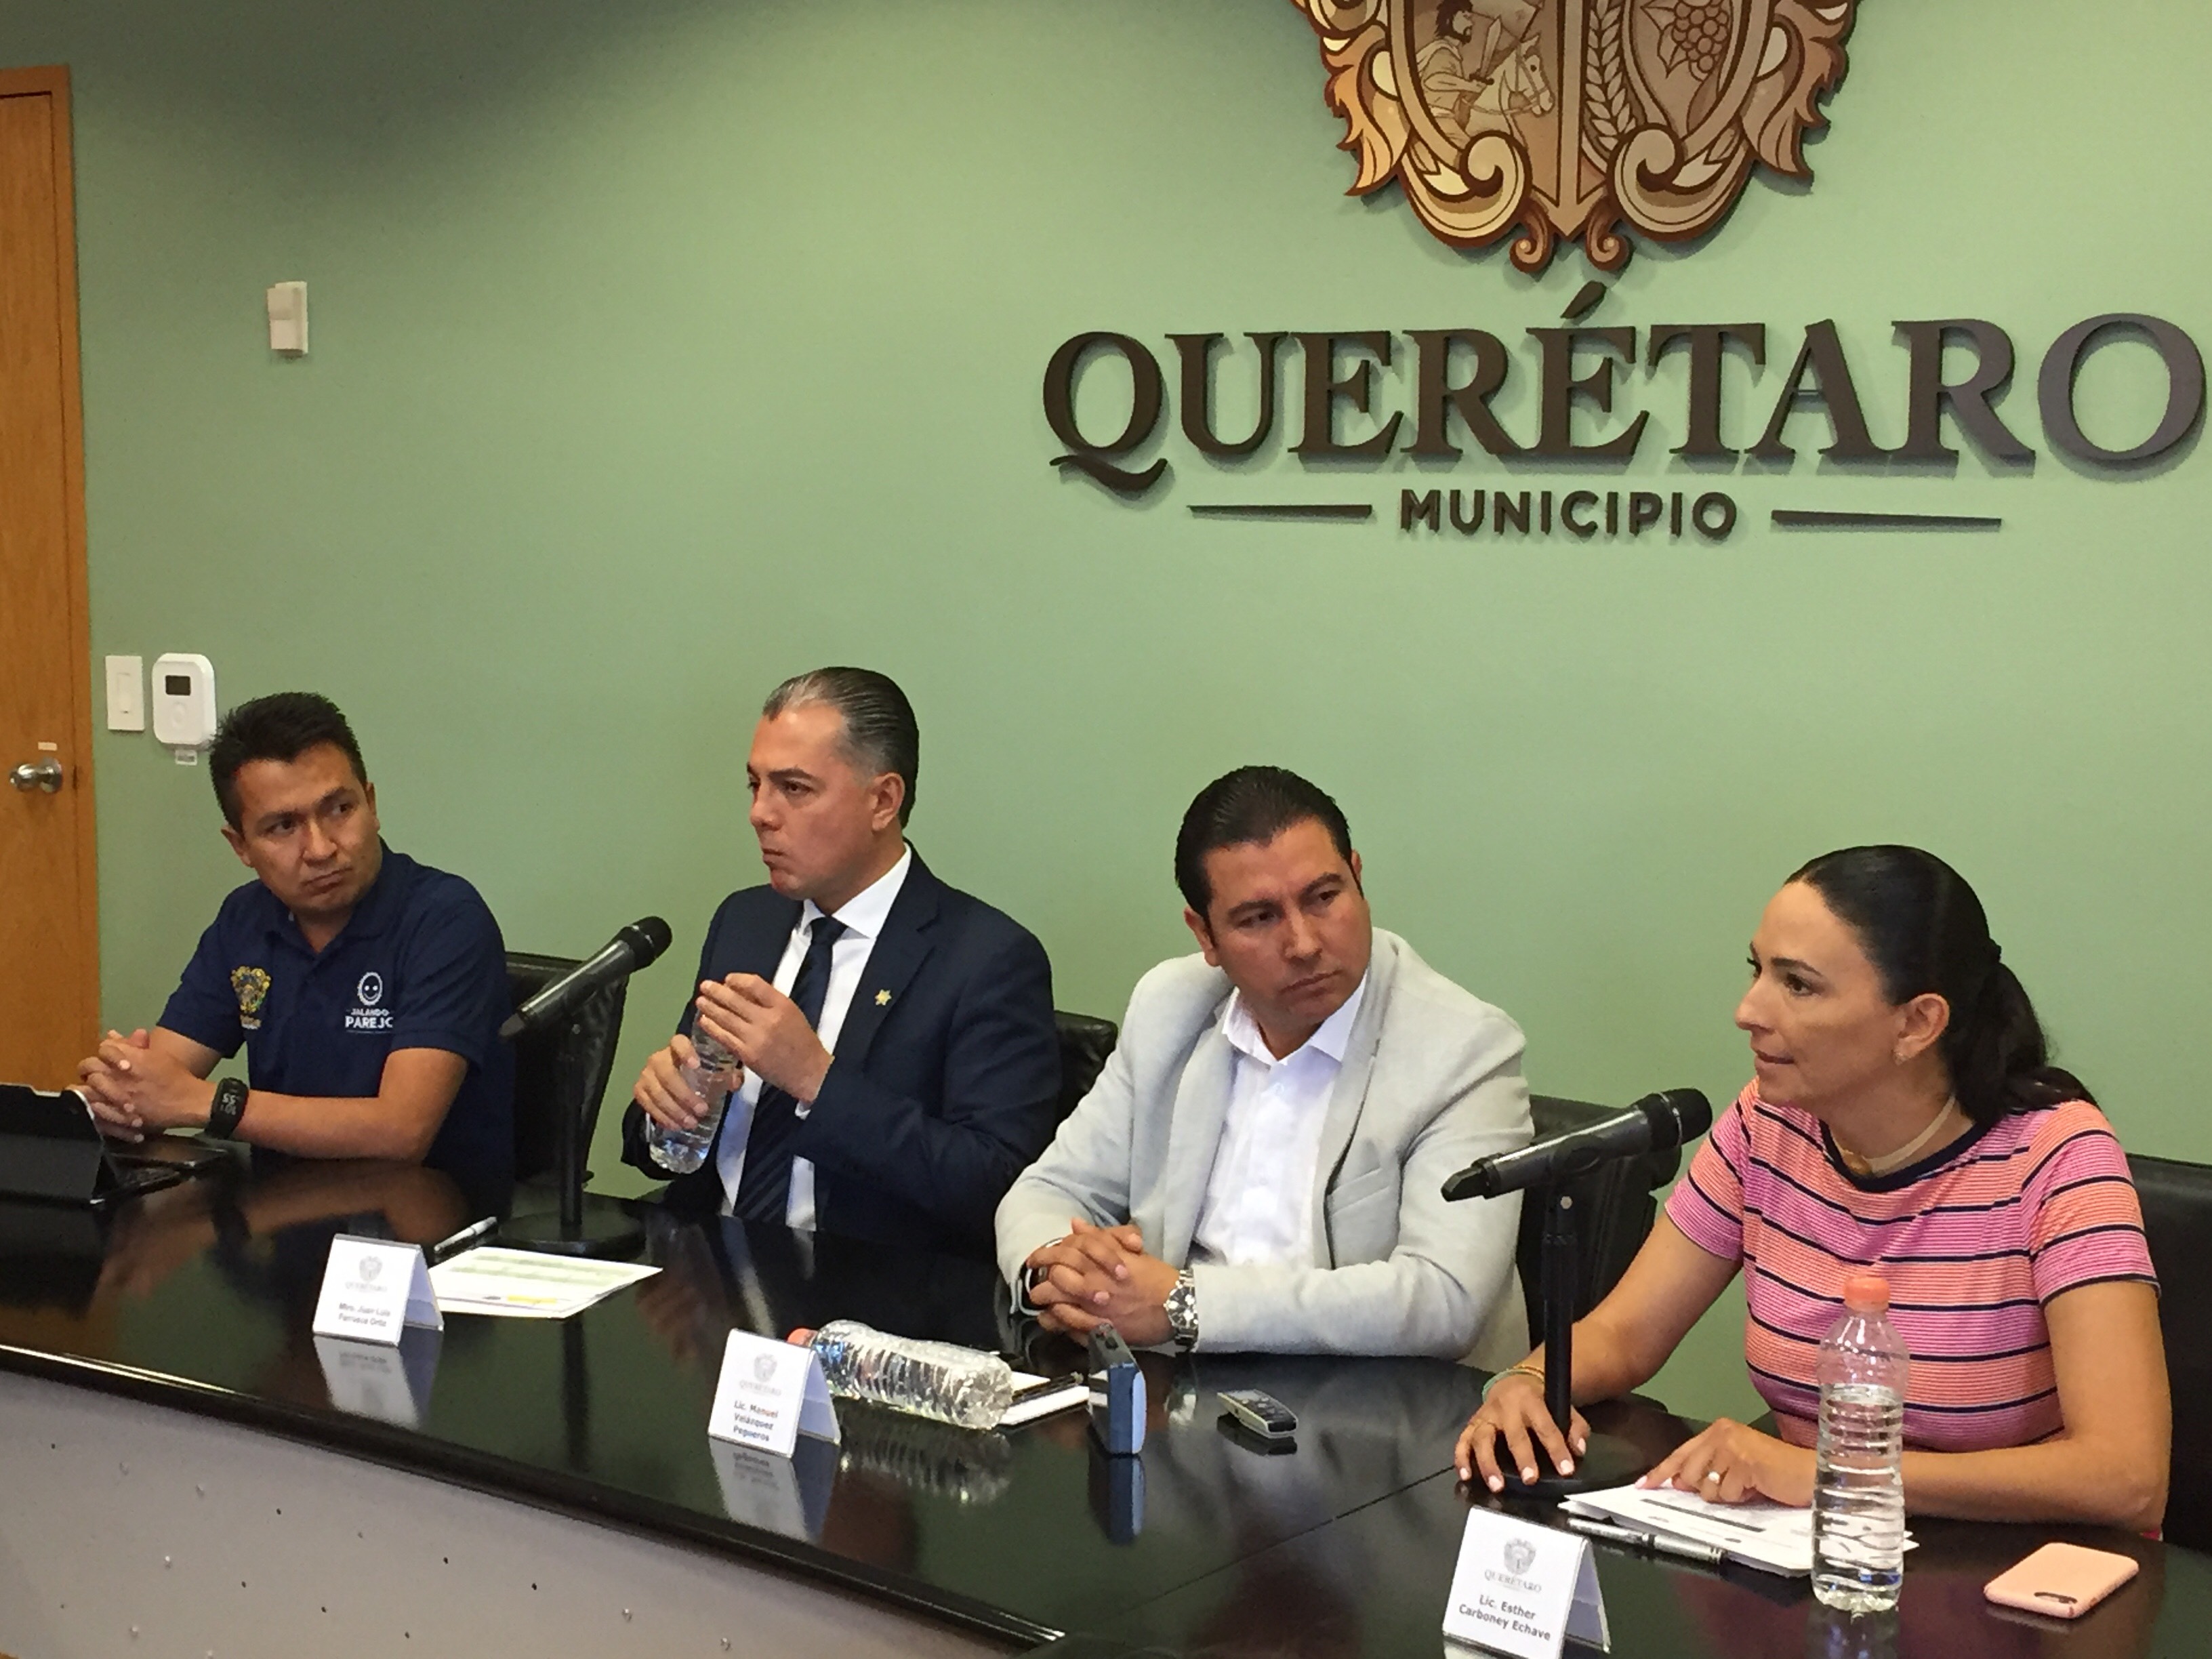  Espera municipio de Querétaro derrama económica por 400 mdp durante Semana Santa